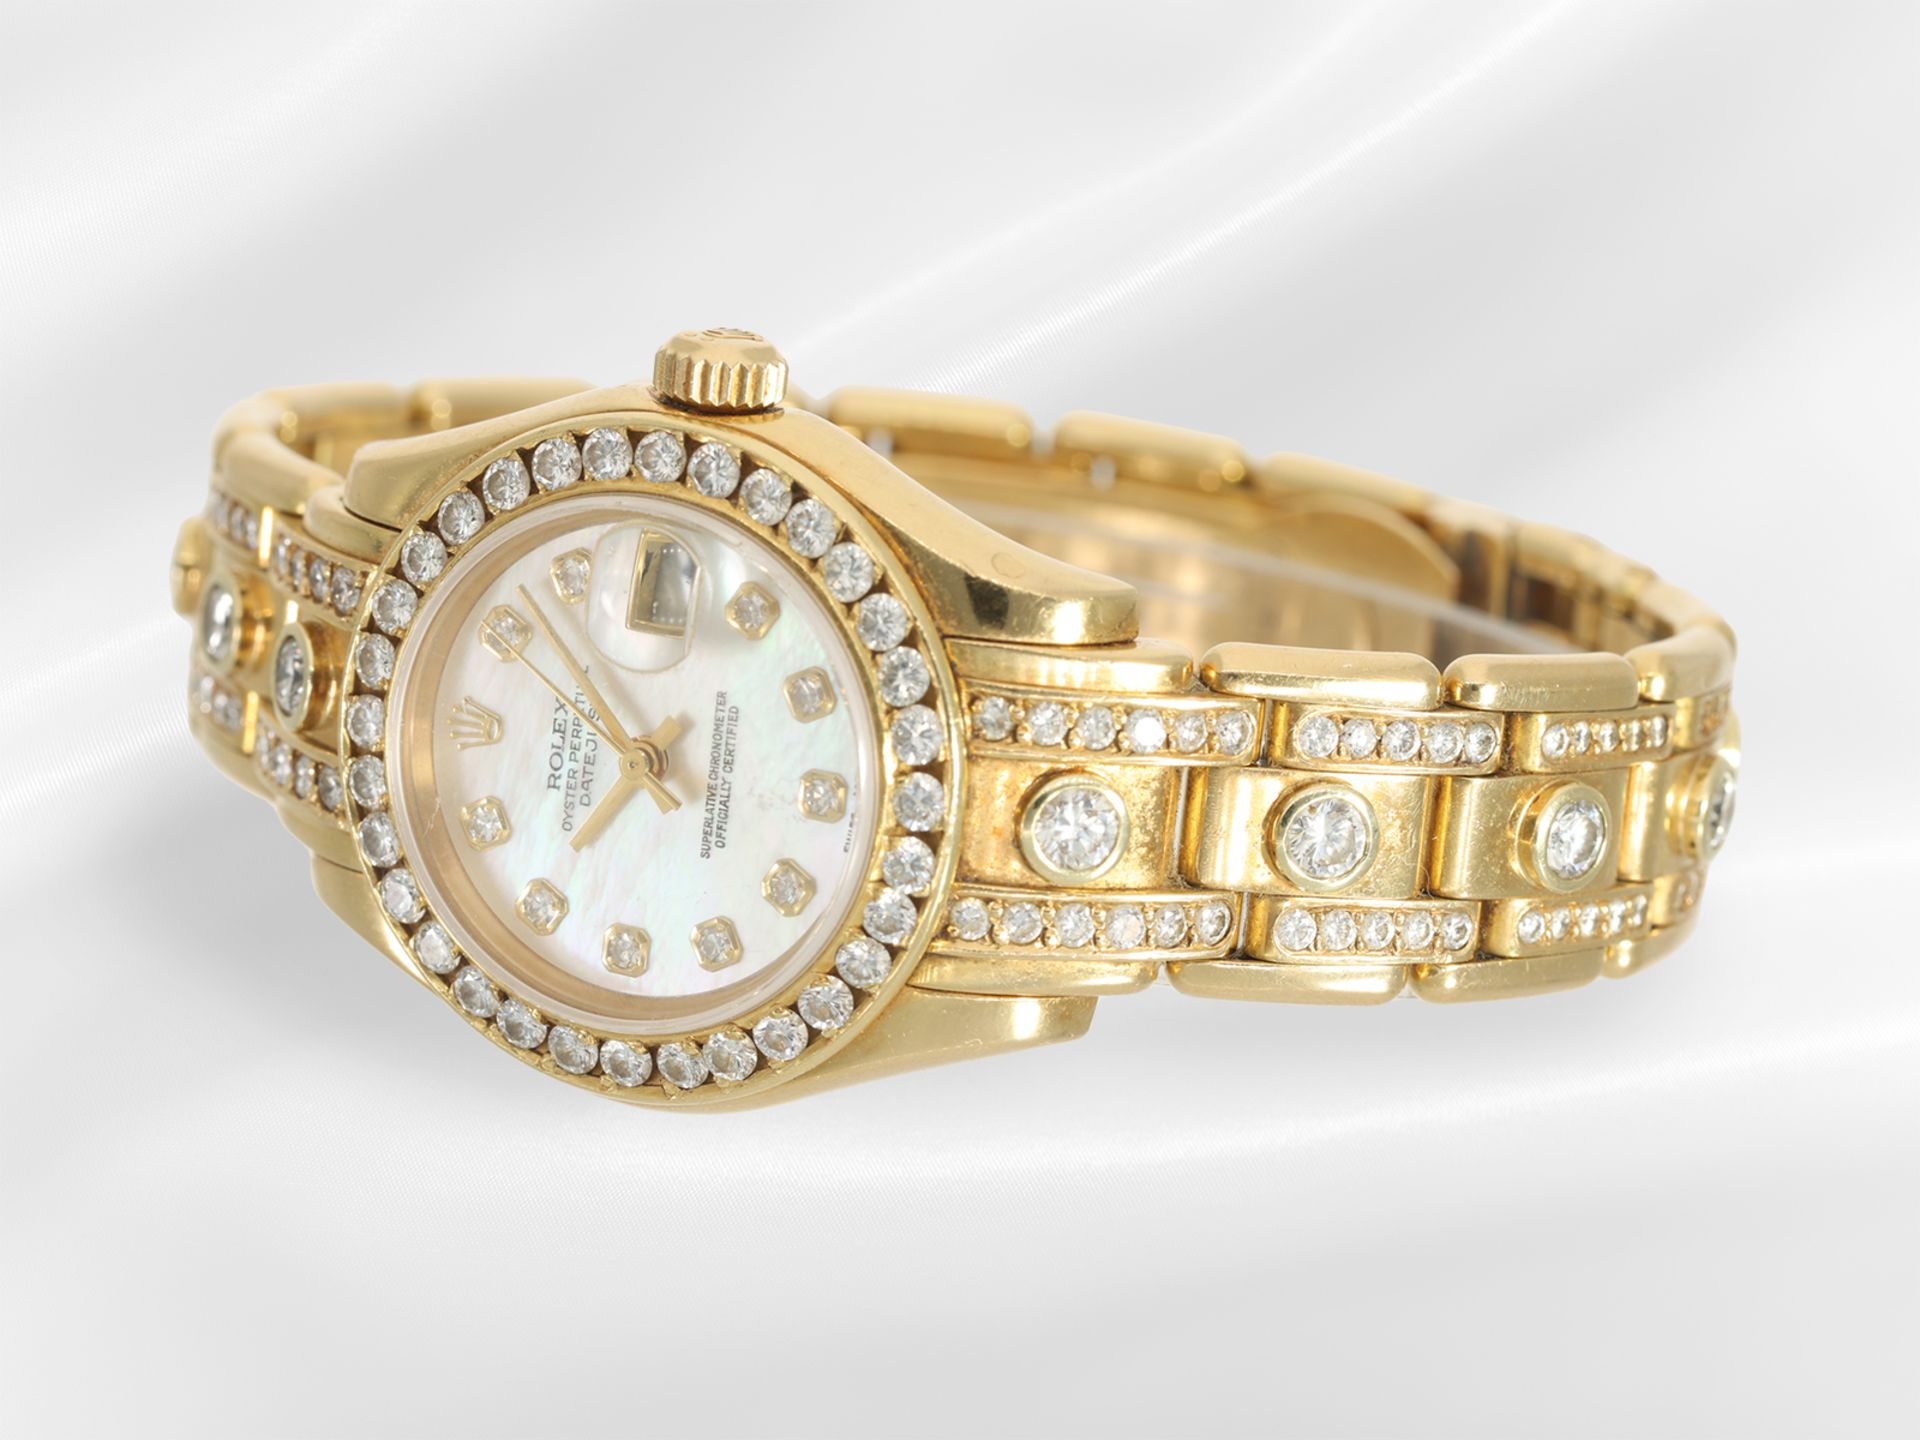 Armbanduhr: gesuchte luxuriöse Damenuhr Rolex Pearlmaster 29 mit Brillantbesatz und Diamantzifferbla - Bild 3 aus 6